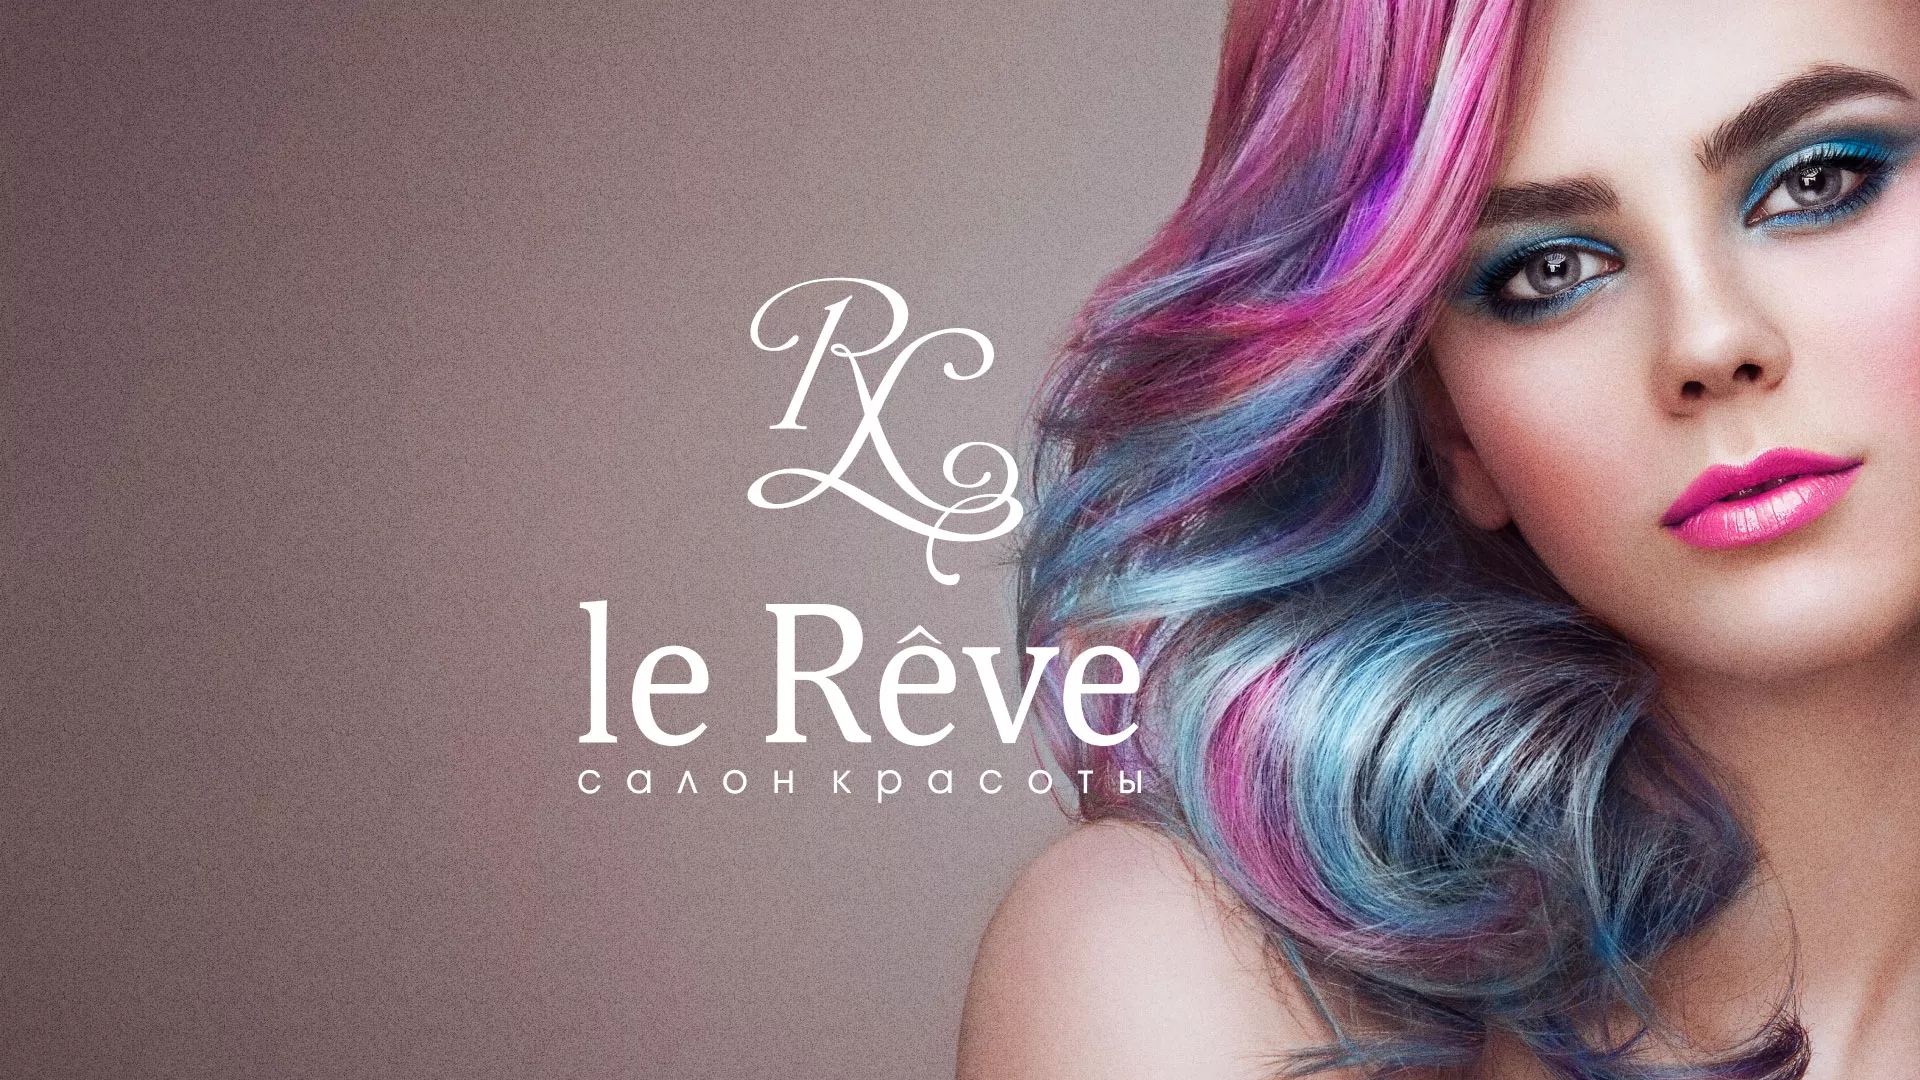 Создание сайта для салона красоты «Le Reve» в Екатеринбурге